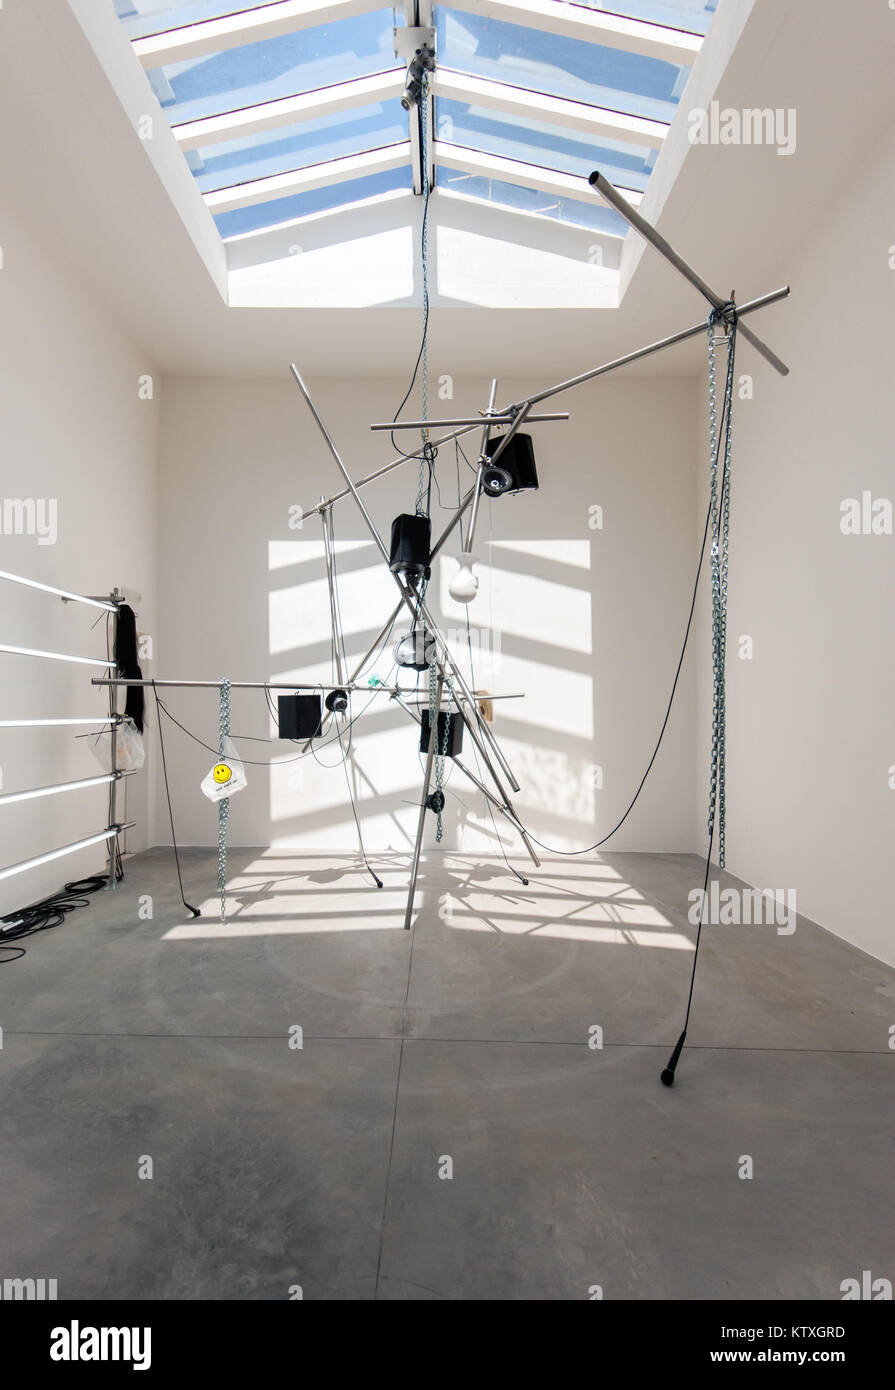 Pepo Salazar, Biziak 5.b, 2015, escultura, instalación de los sujetos (los temas) exposición, Pabellón de España, 56ª Bienal de Arte de Venecia, 2015 Foto de stock